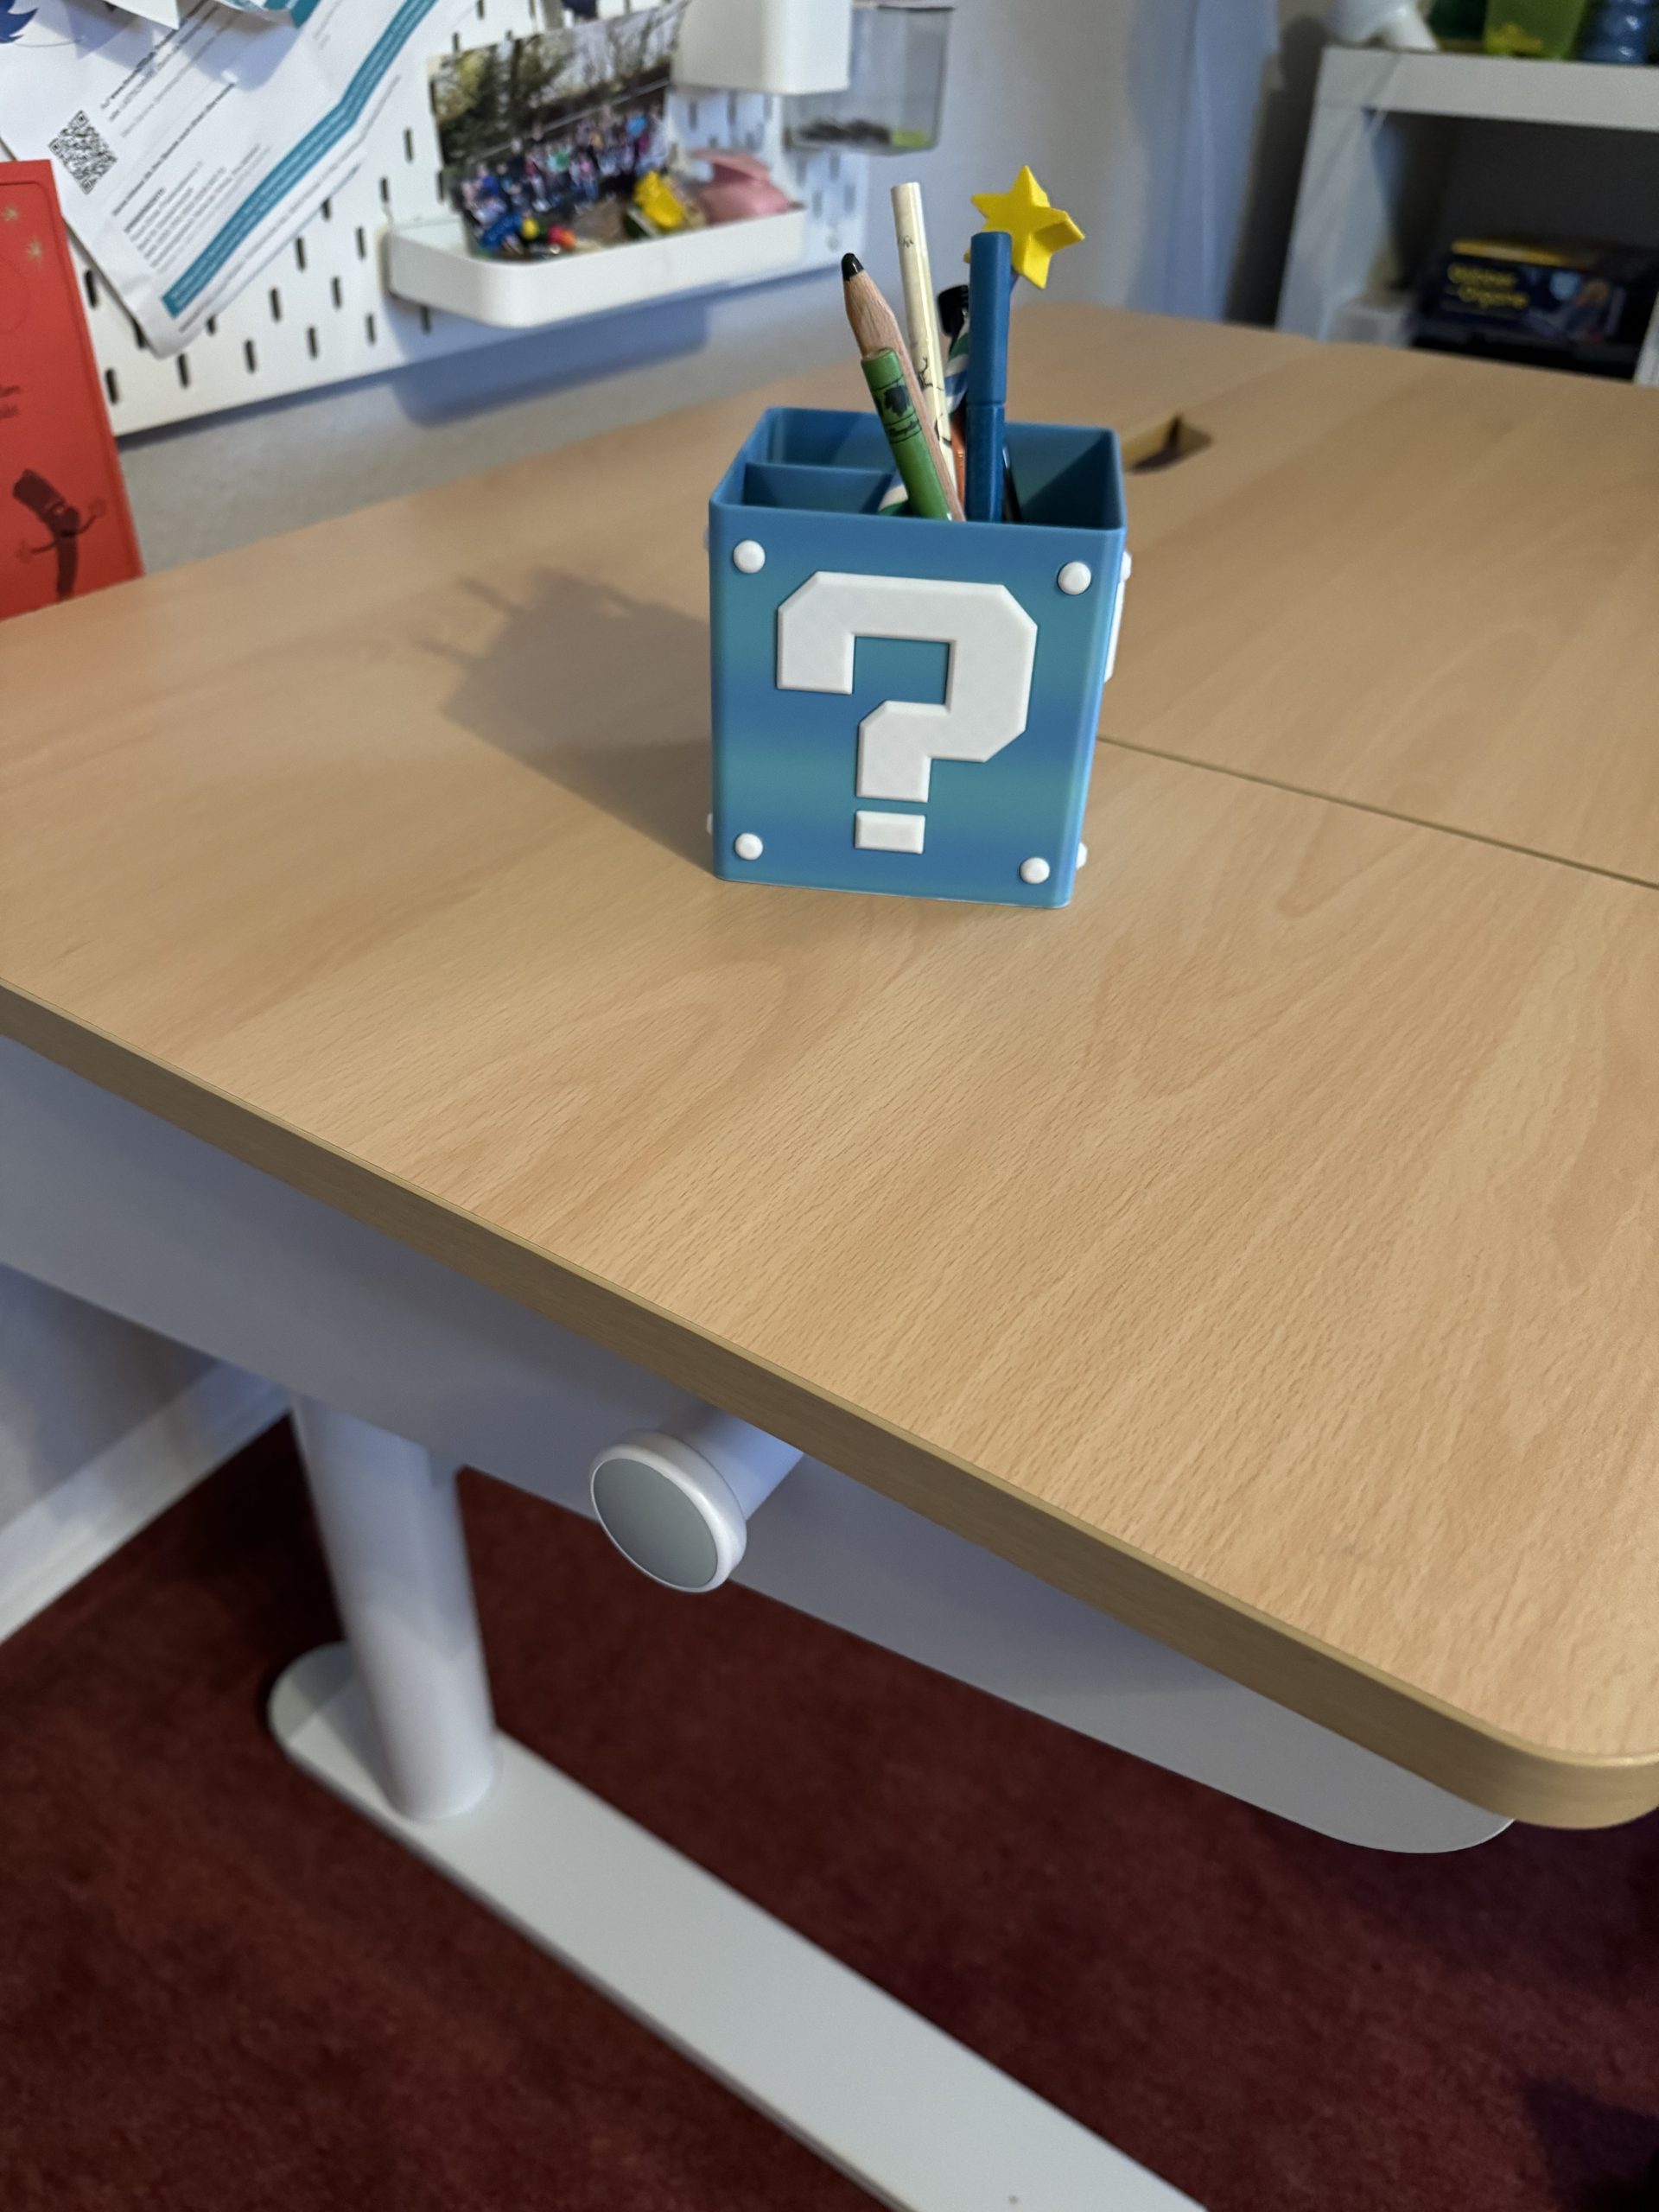 FlexiSpot SD2 im Test - elektrischer Schreibtisch für Kinder